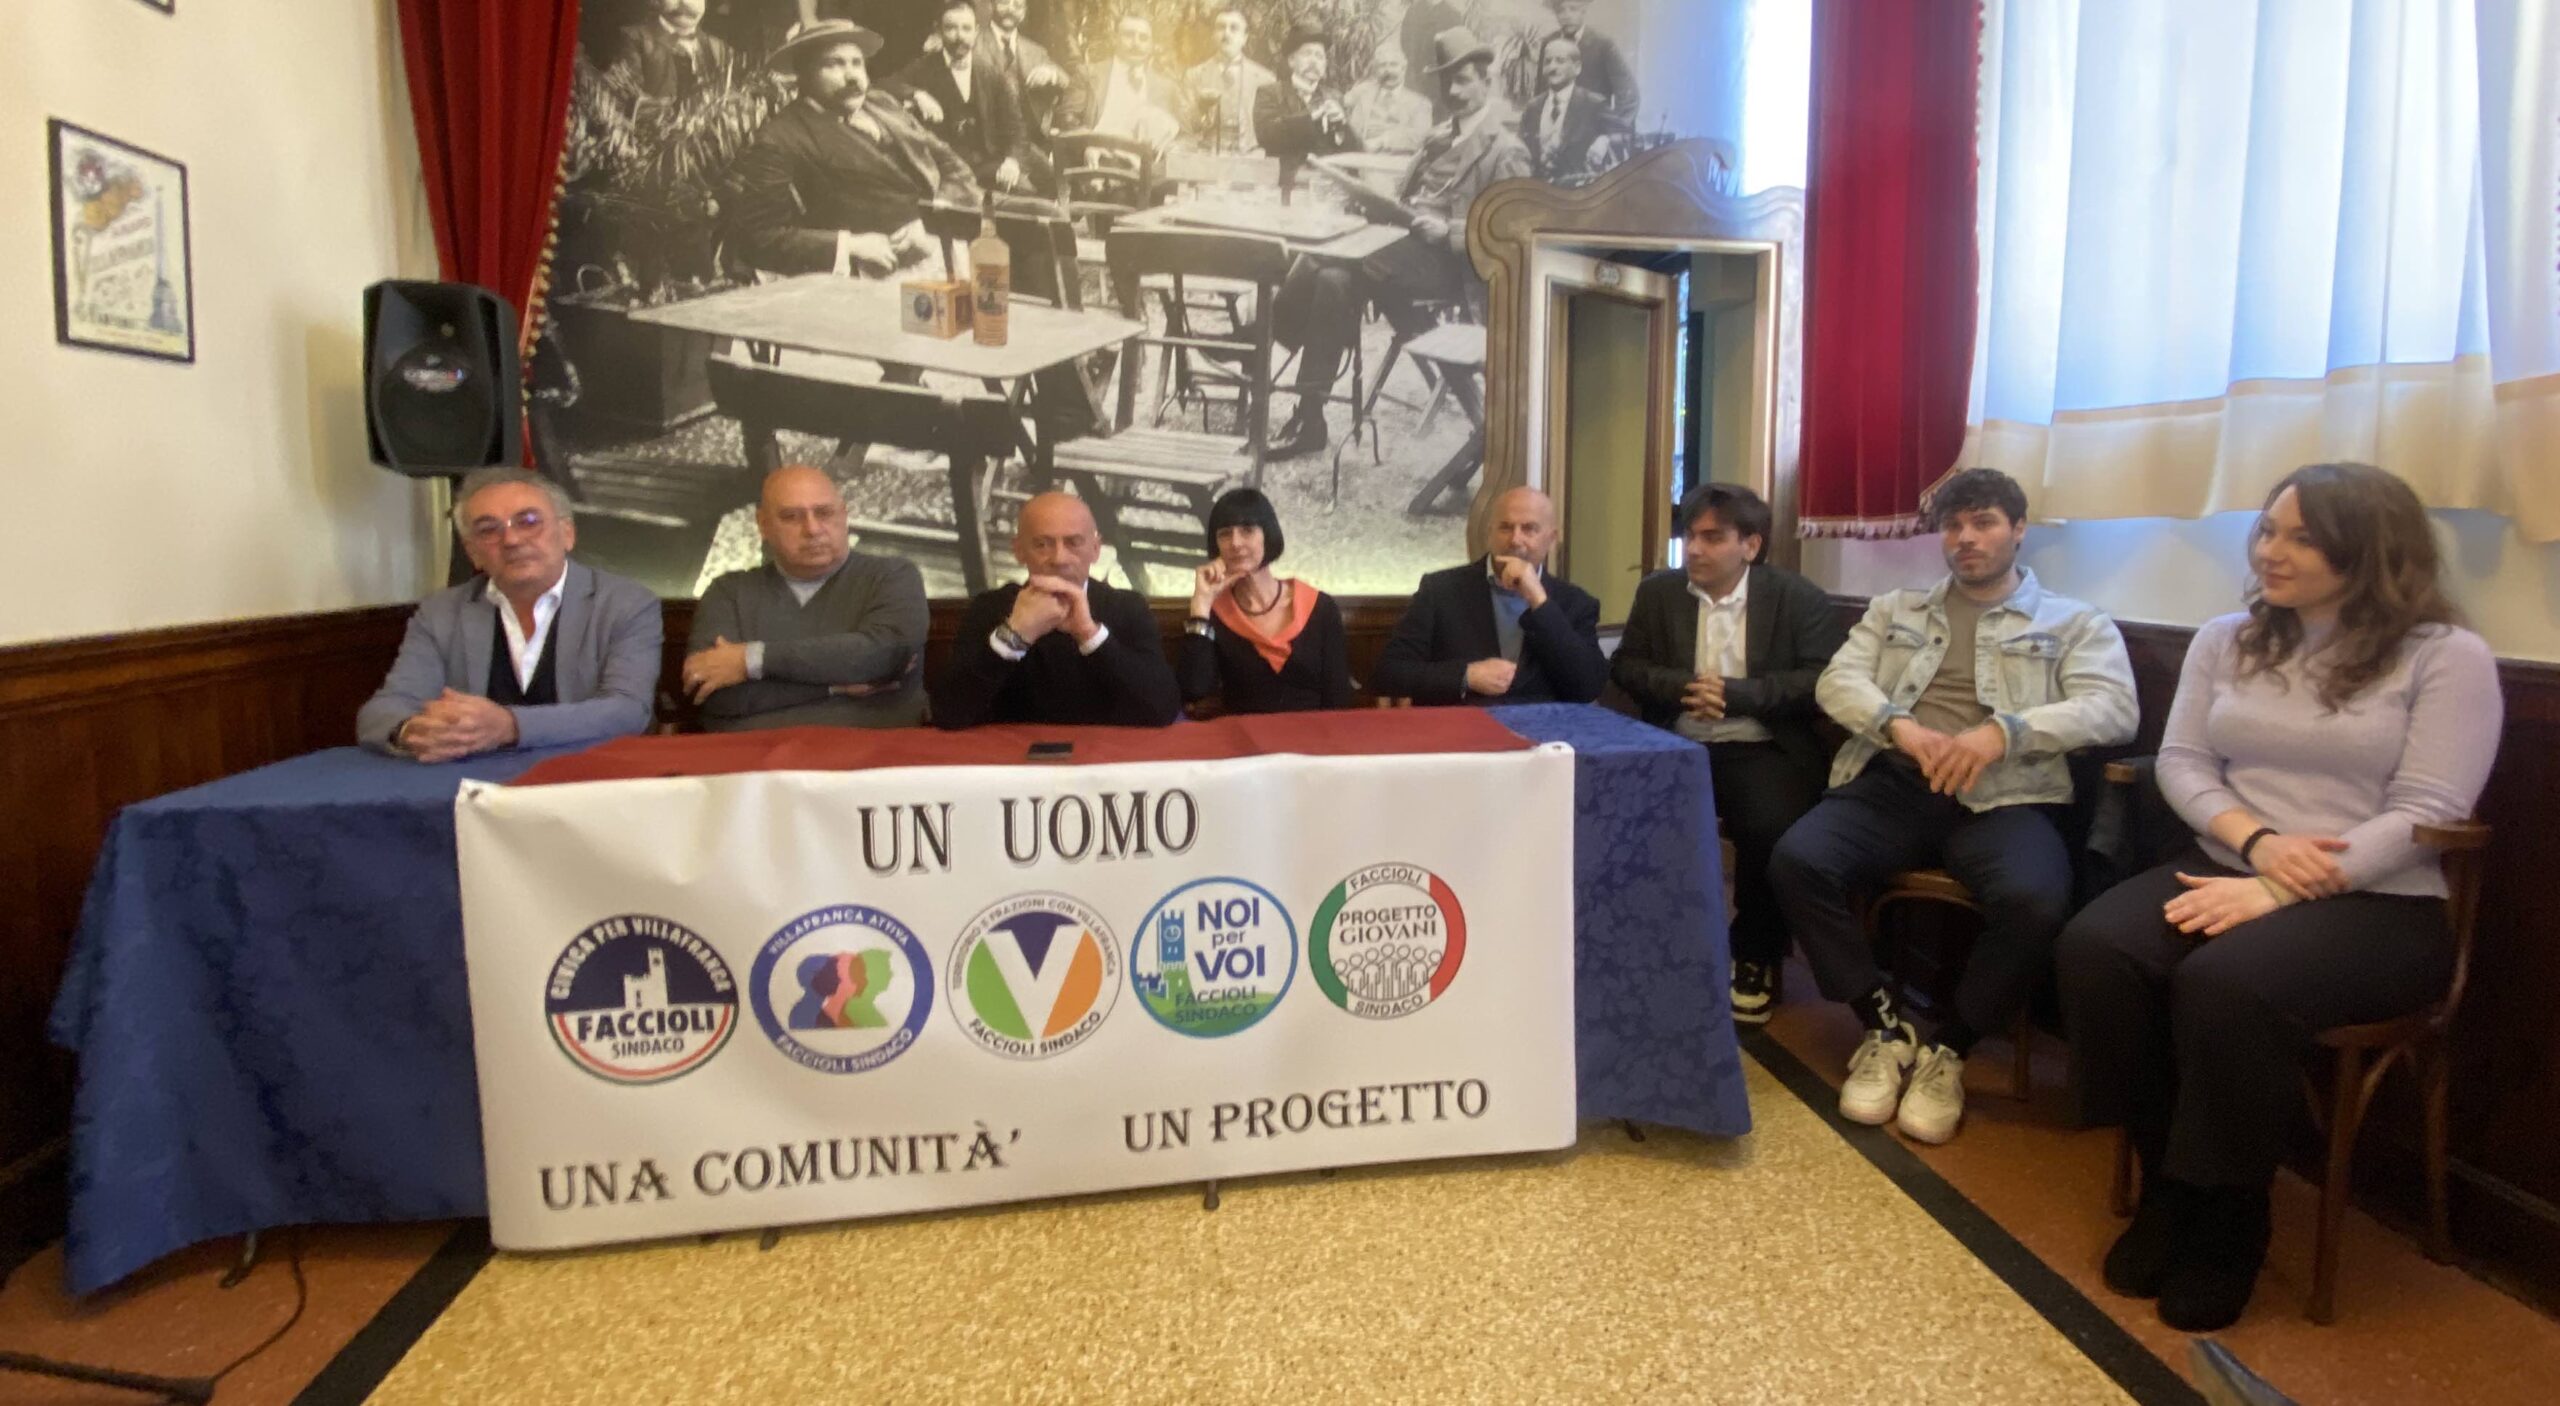 Mario Faccioli presenta le cinque liste che lo sostengono nella corsa a sindaco di Villafranca